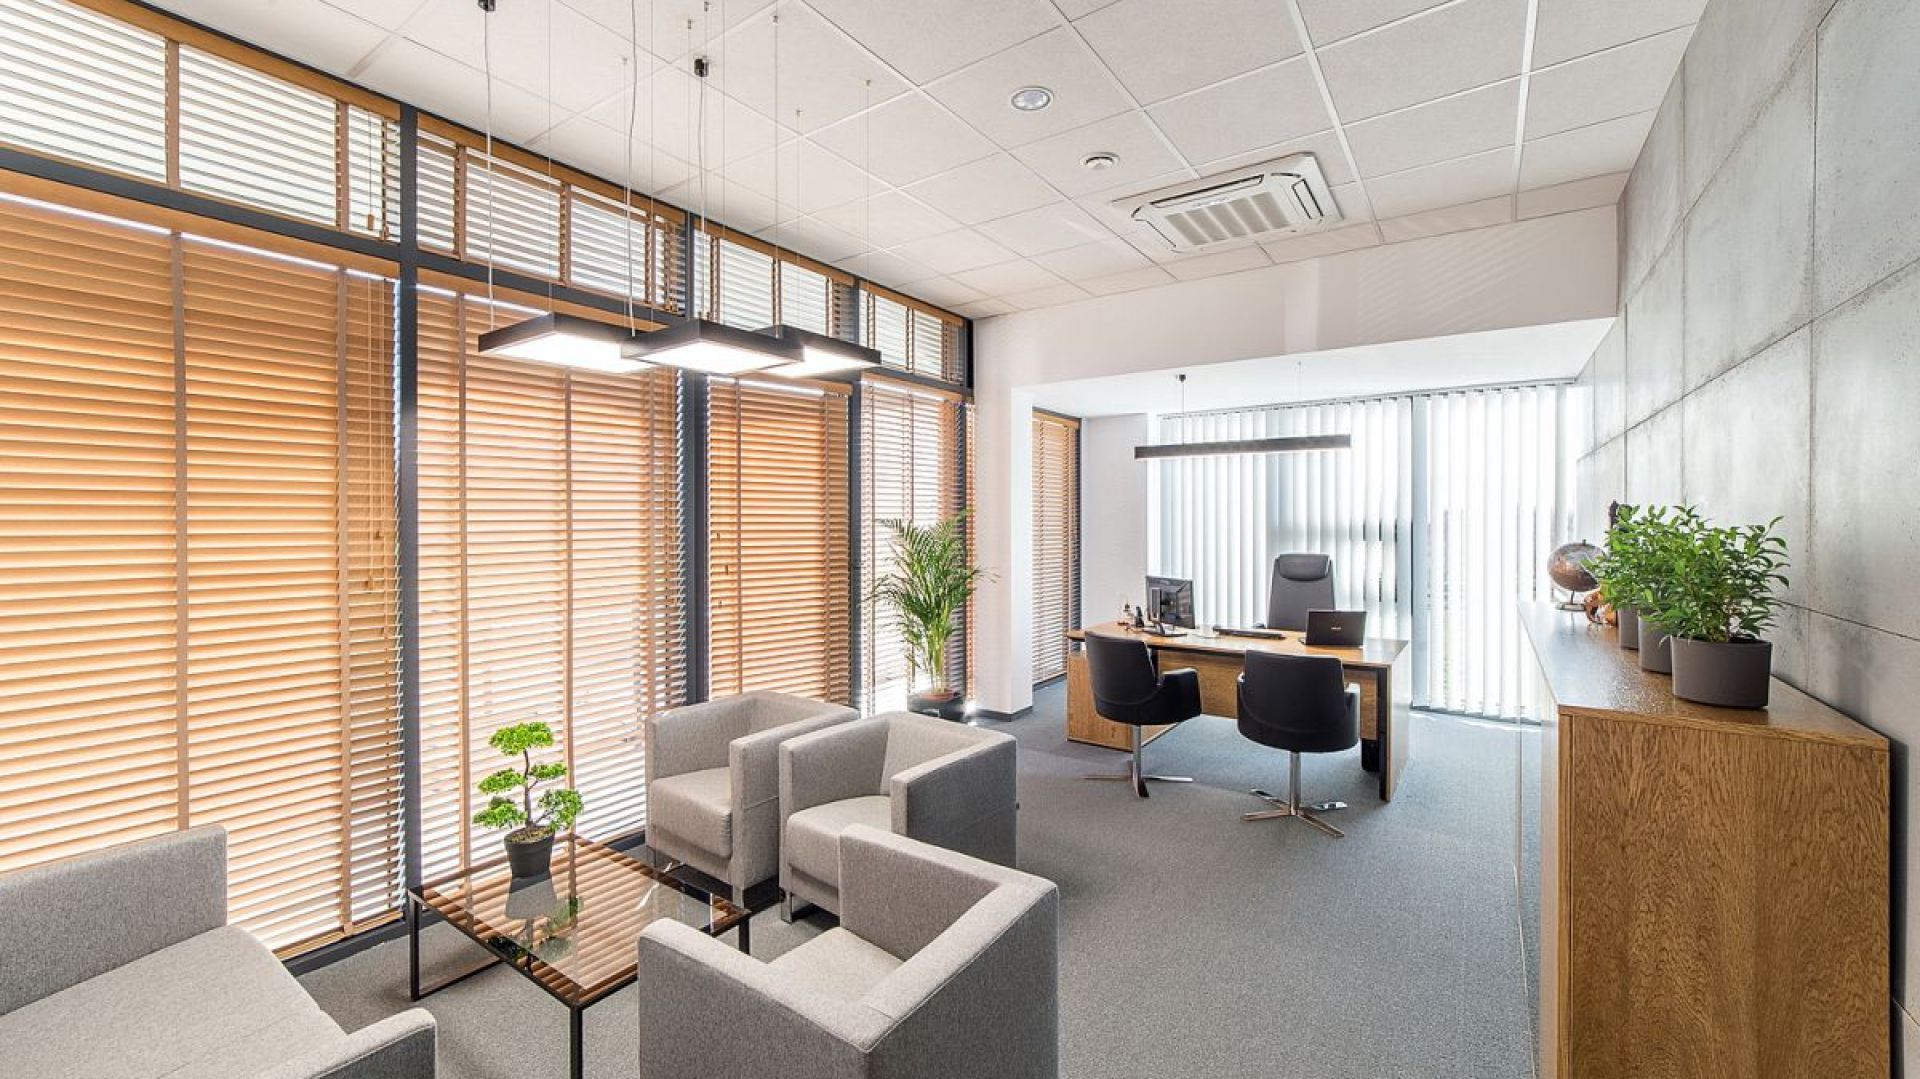 Funkcjonalność, design i... oświetlenie - zobacz realizację nowoczesnego biura